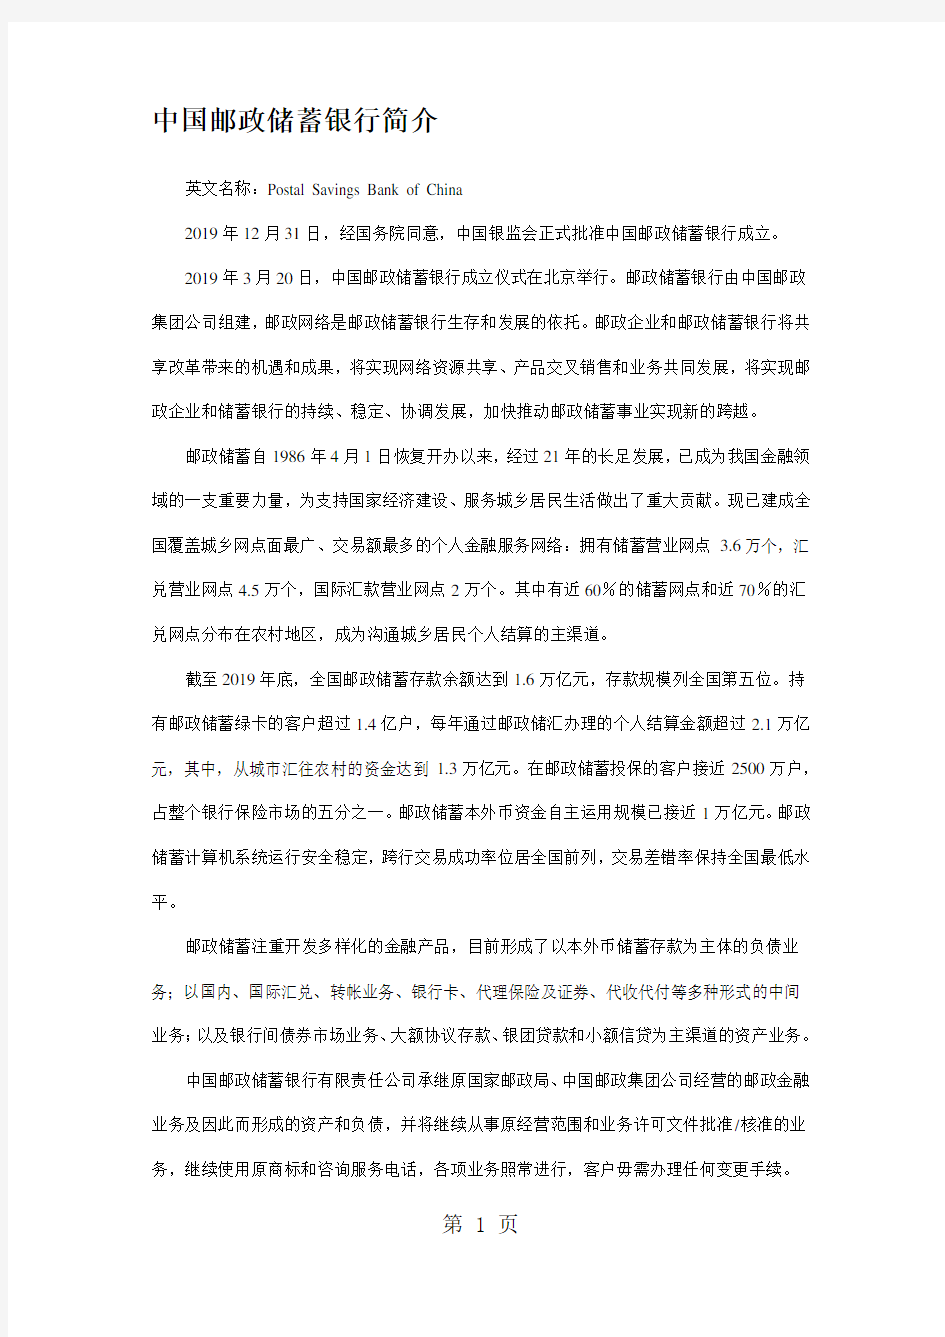 中国邮政储蓄银行简介共12页文档